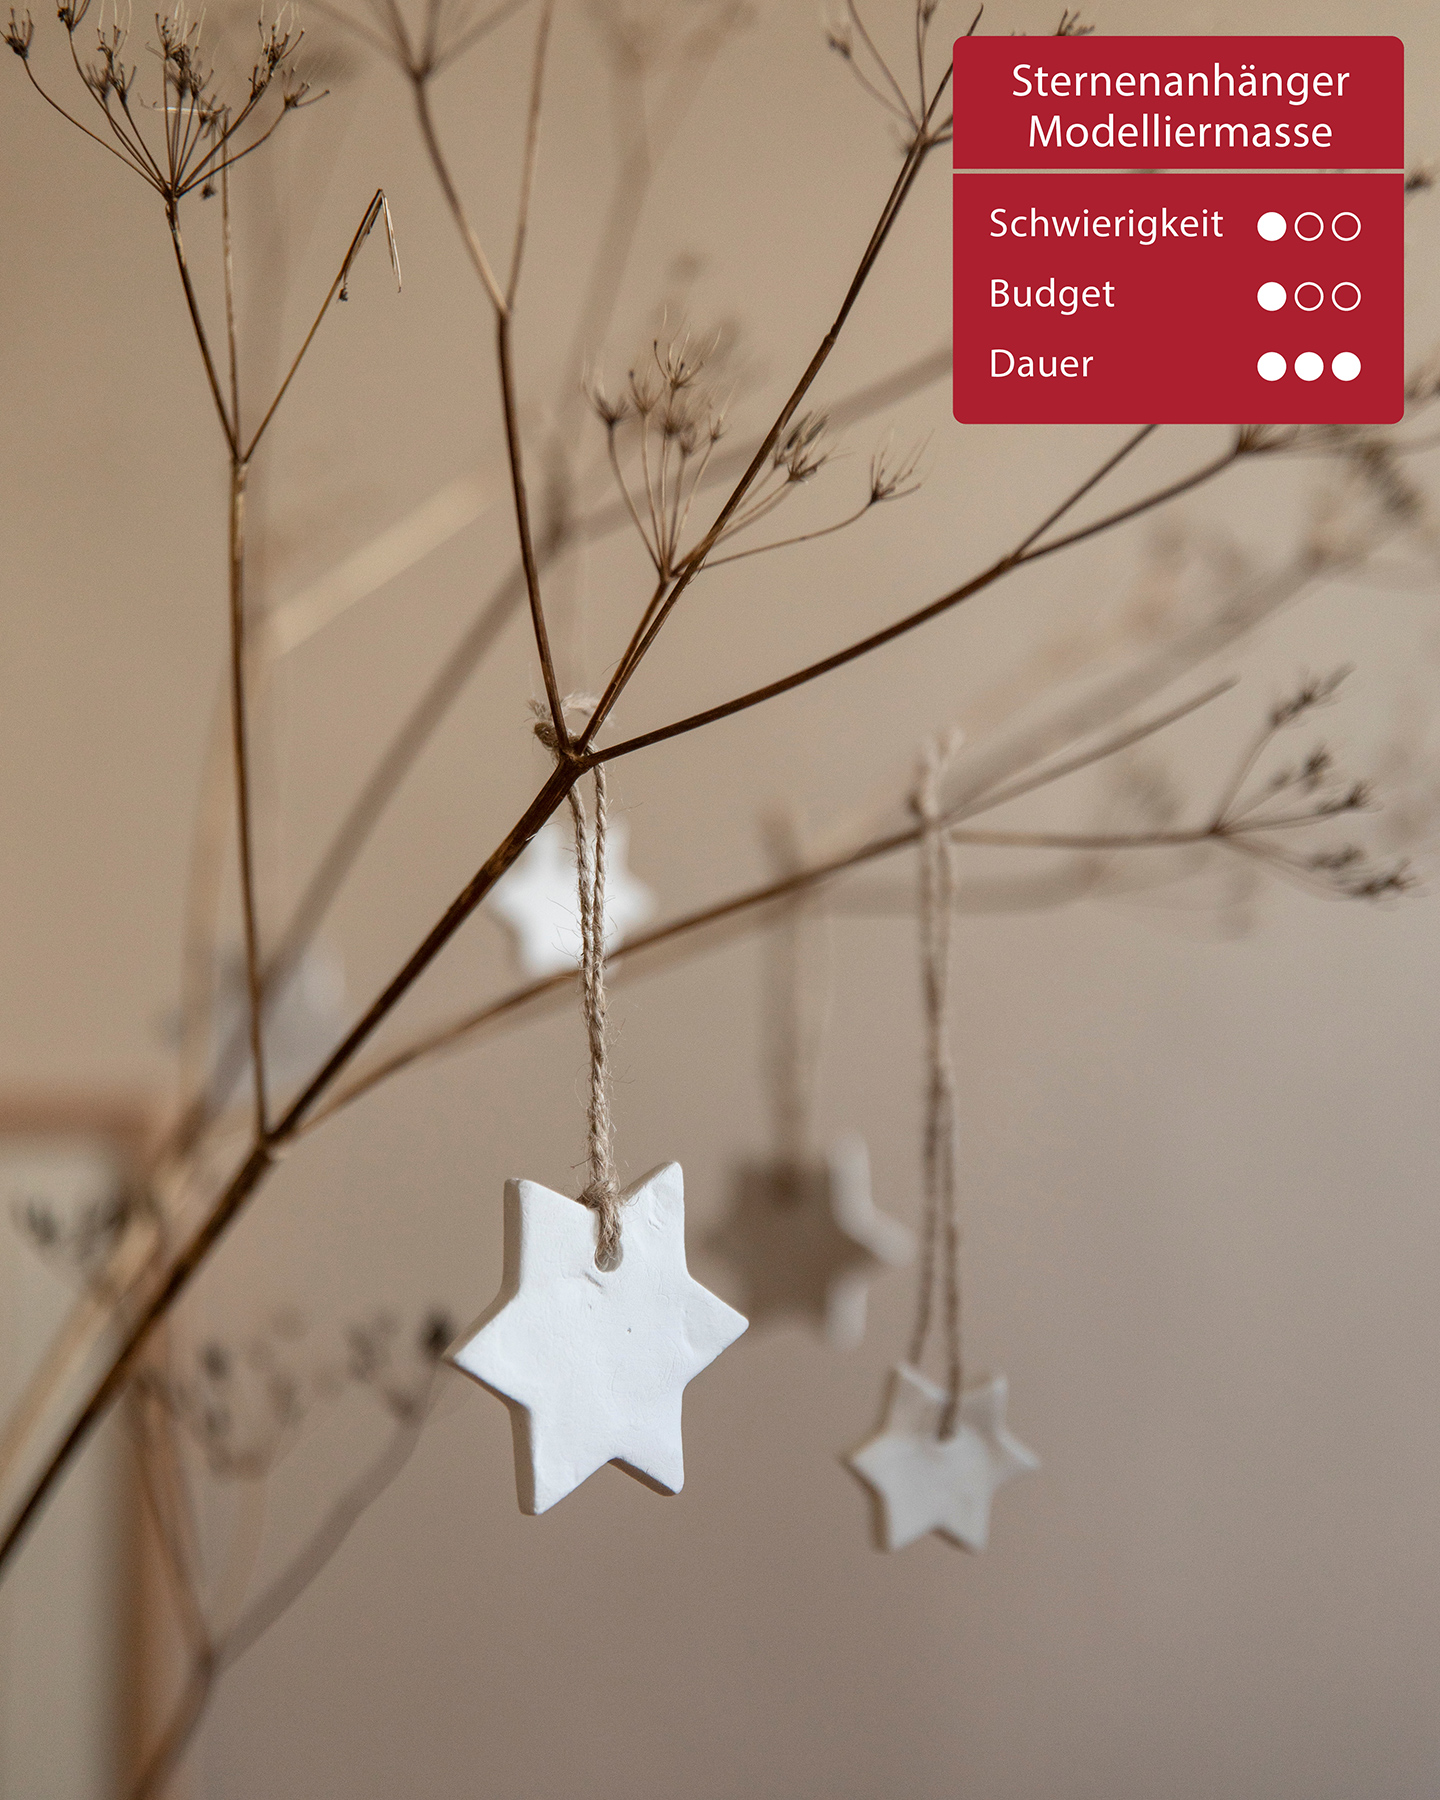 Stern aus Modelliermasse hängt als Weihnachtsbaumschmuck an einem Ast